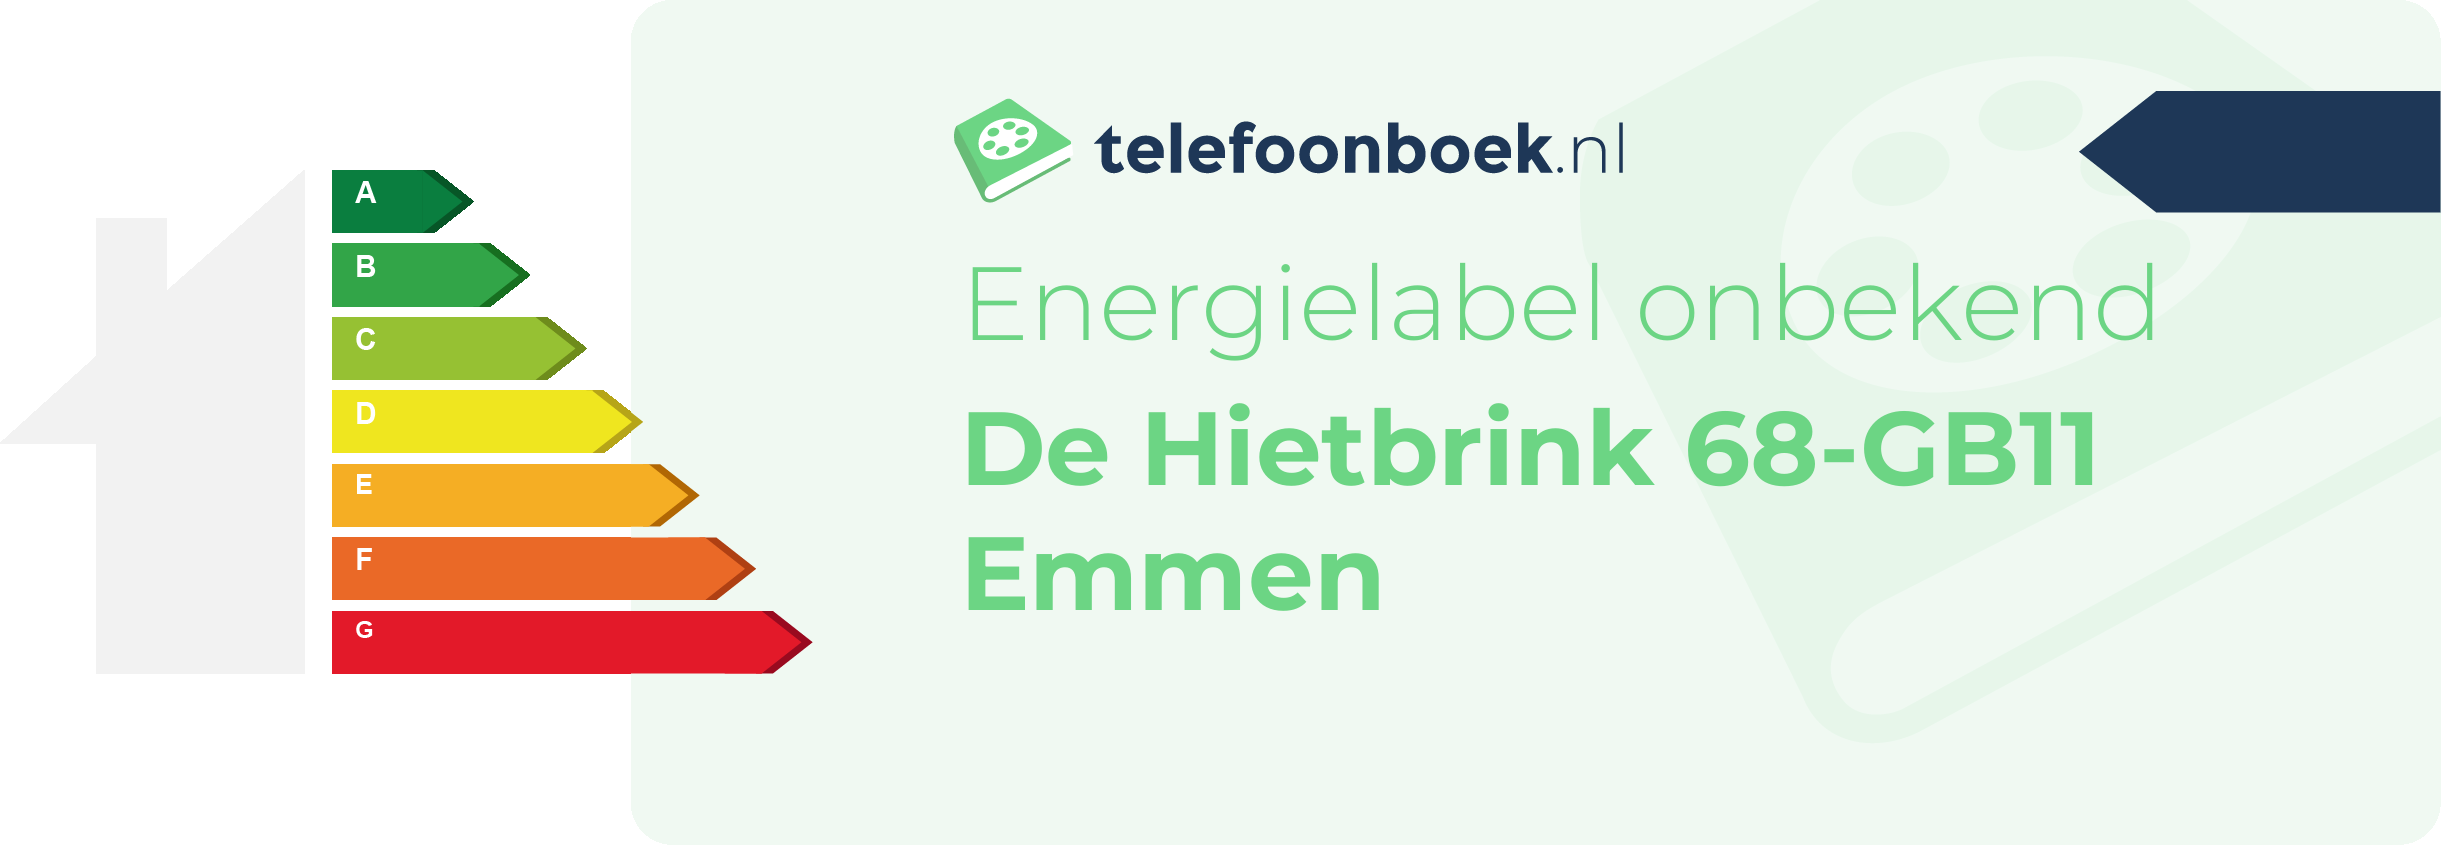 Energielabel De Hietbrink 68-GB11 Emmen